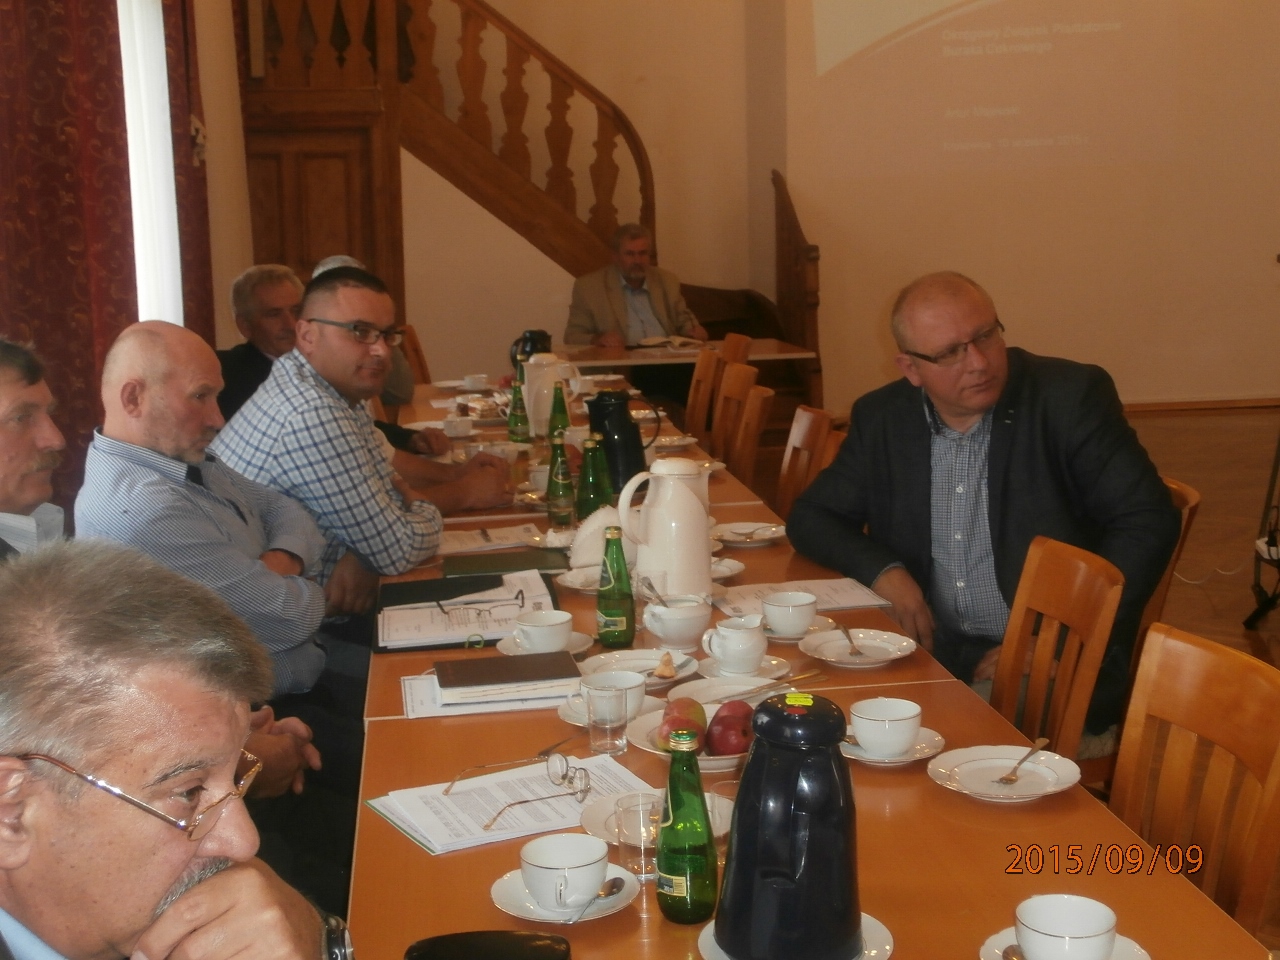 Posiedzenie Zjazd Rejonowego w Kruszwicy w dniu 09.09.2015 r